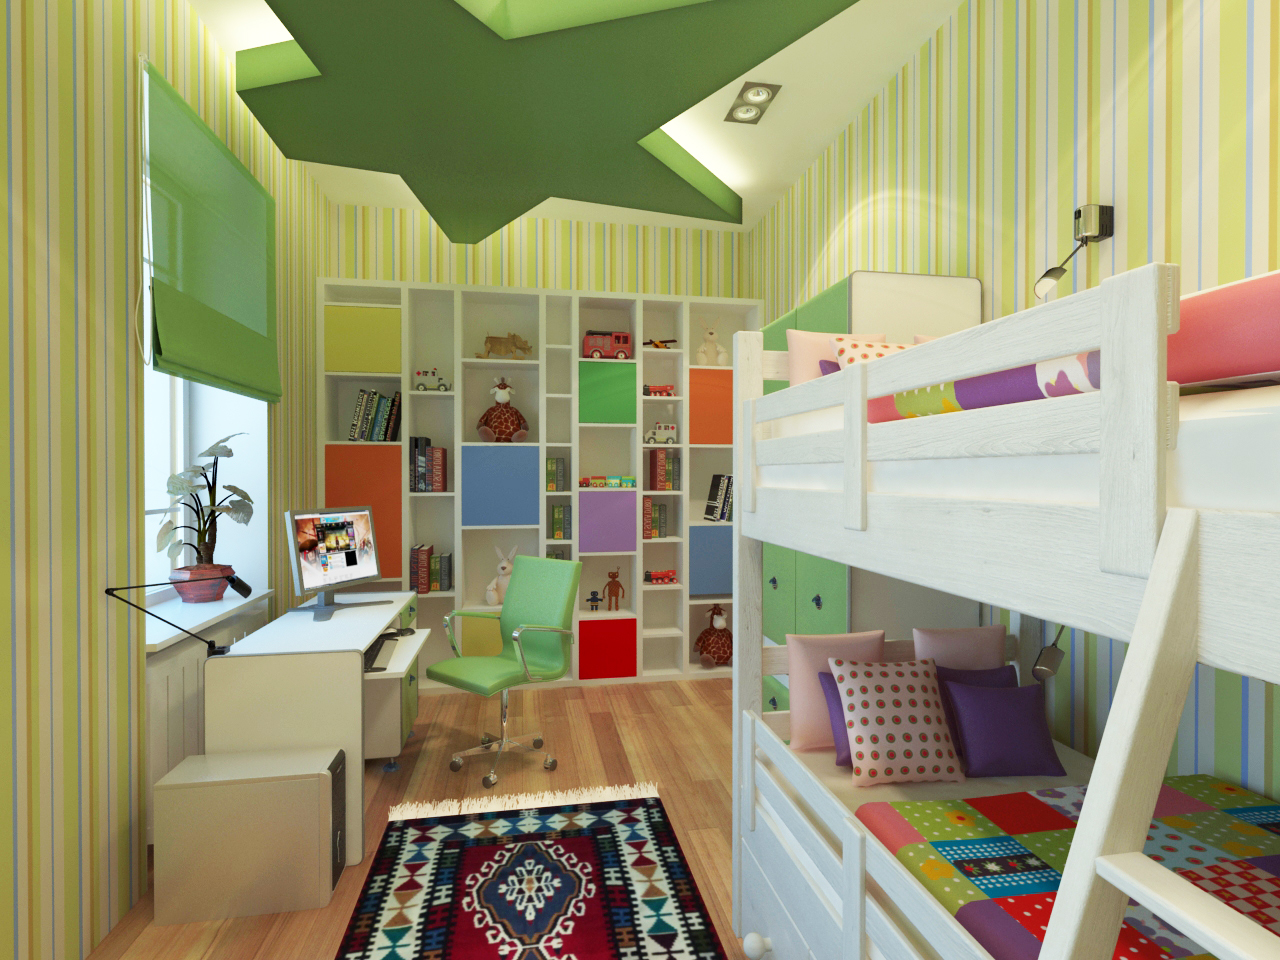 Látványterv gyerekszoba / Architectural visualization Kids room